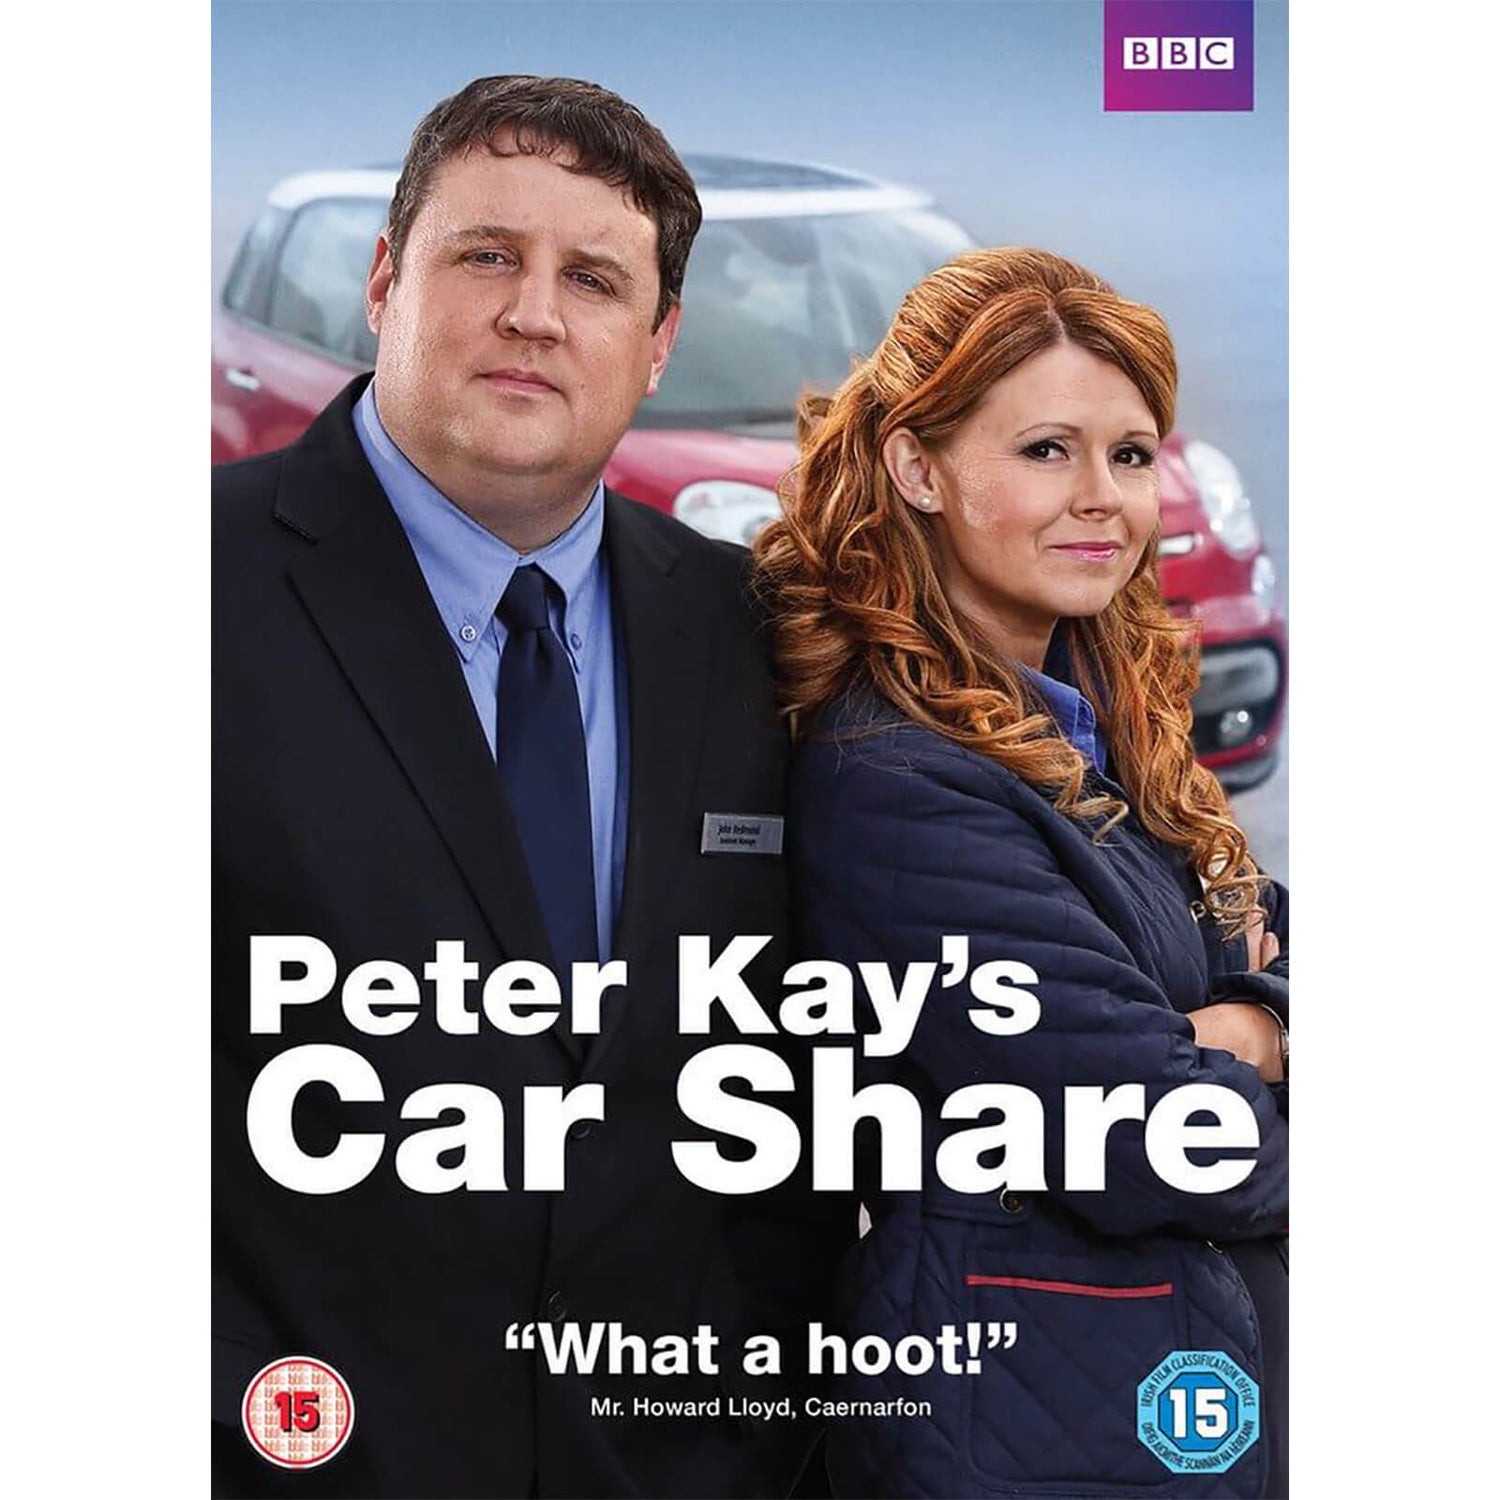 Peter Kay's Car Share